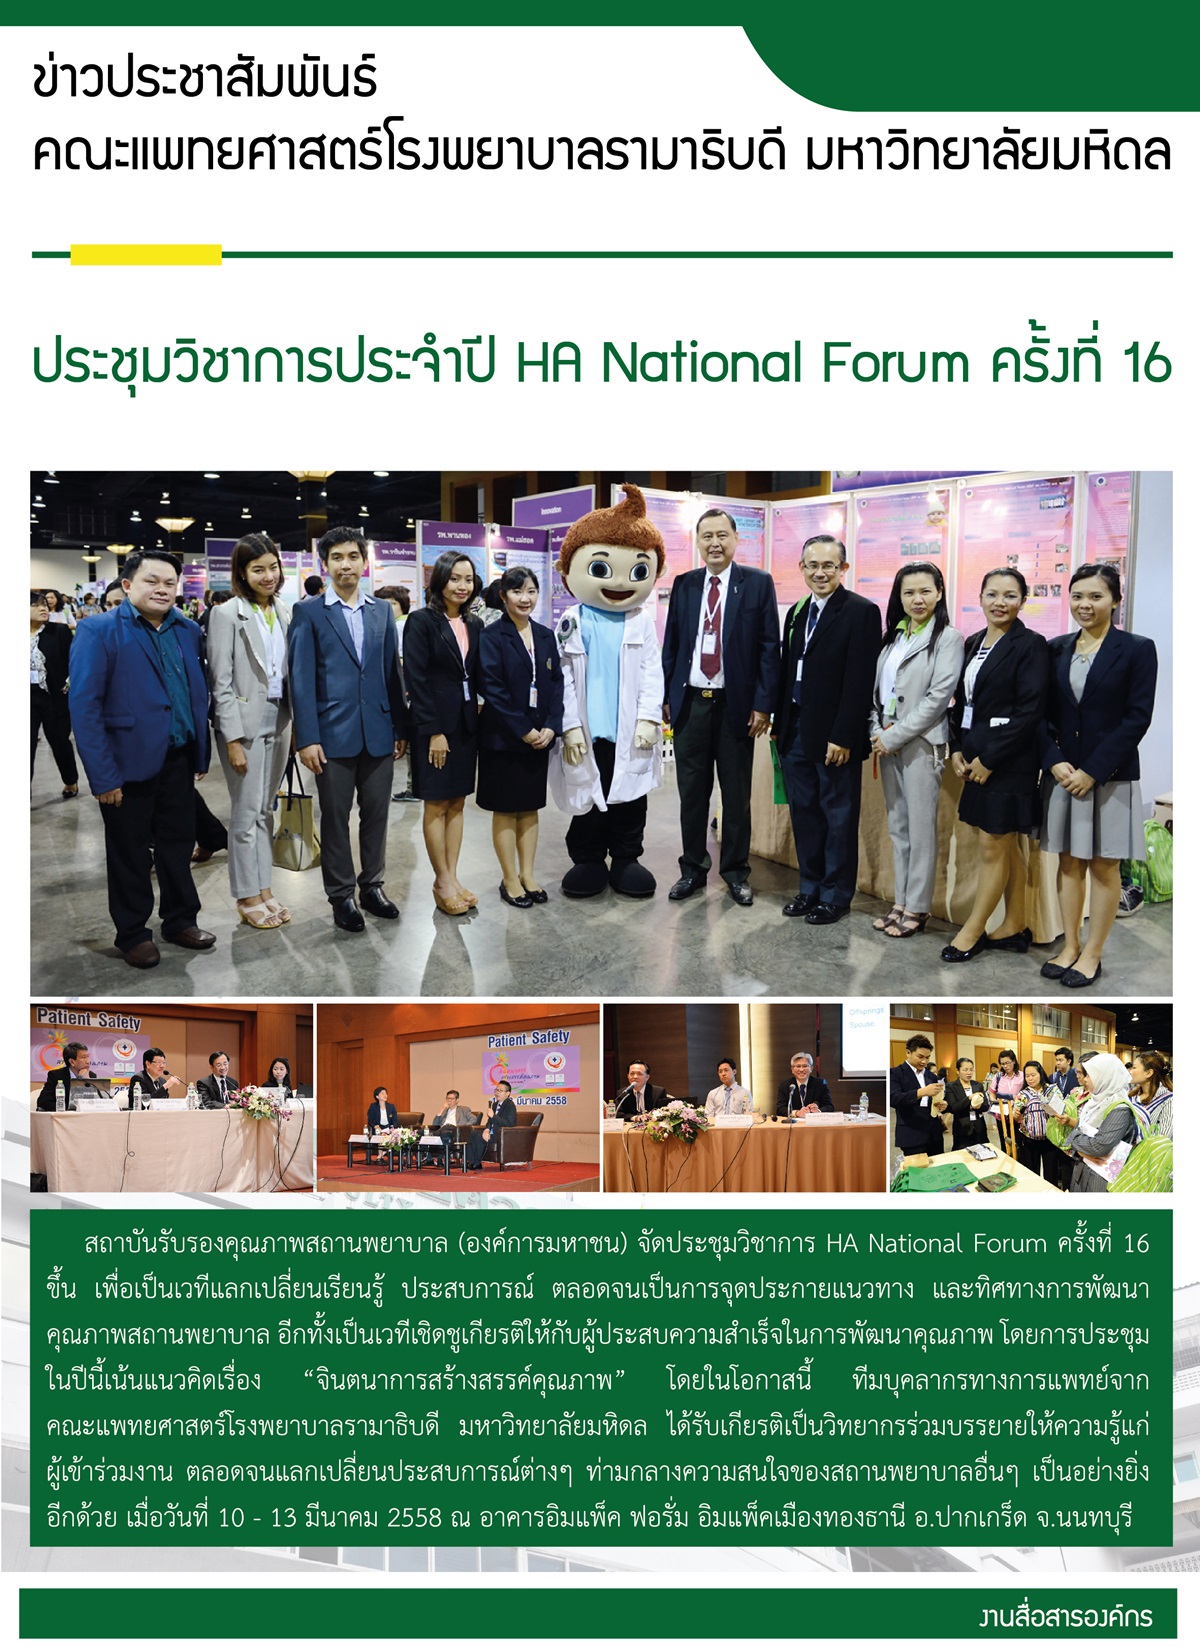 การประชุมวิชาการประจำปี HA National Forum ครั้งที่ 16 